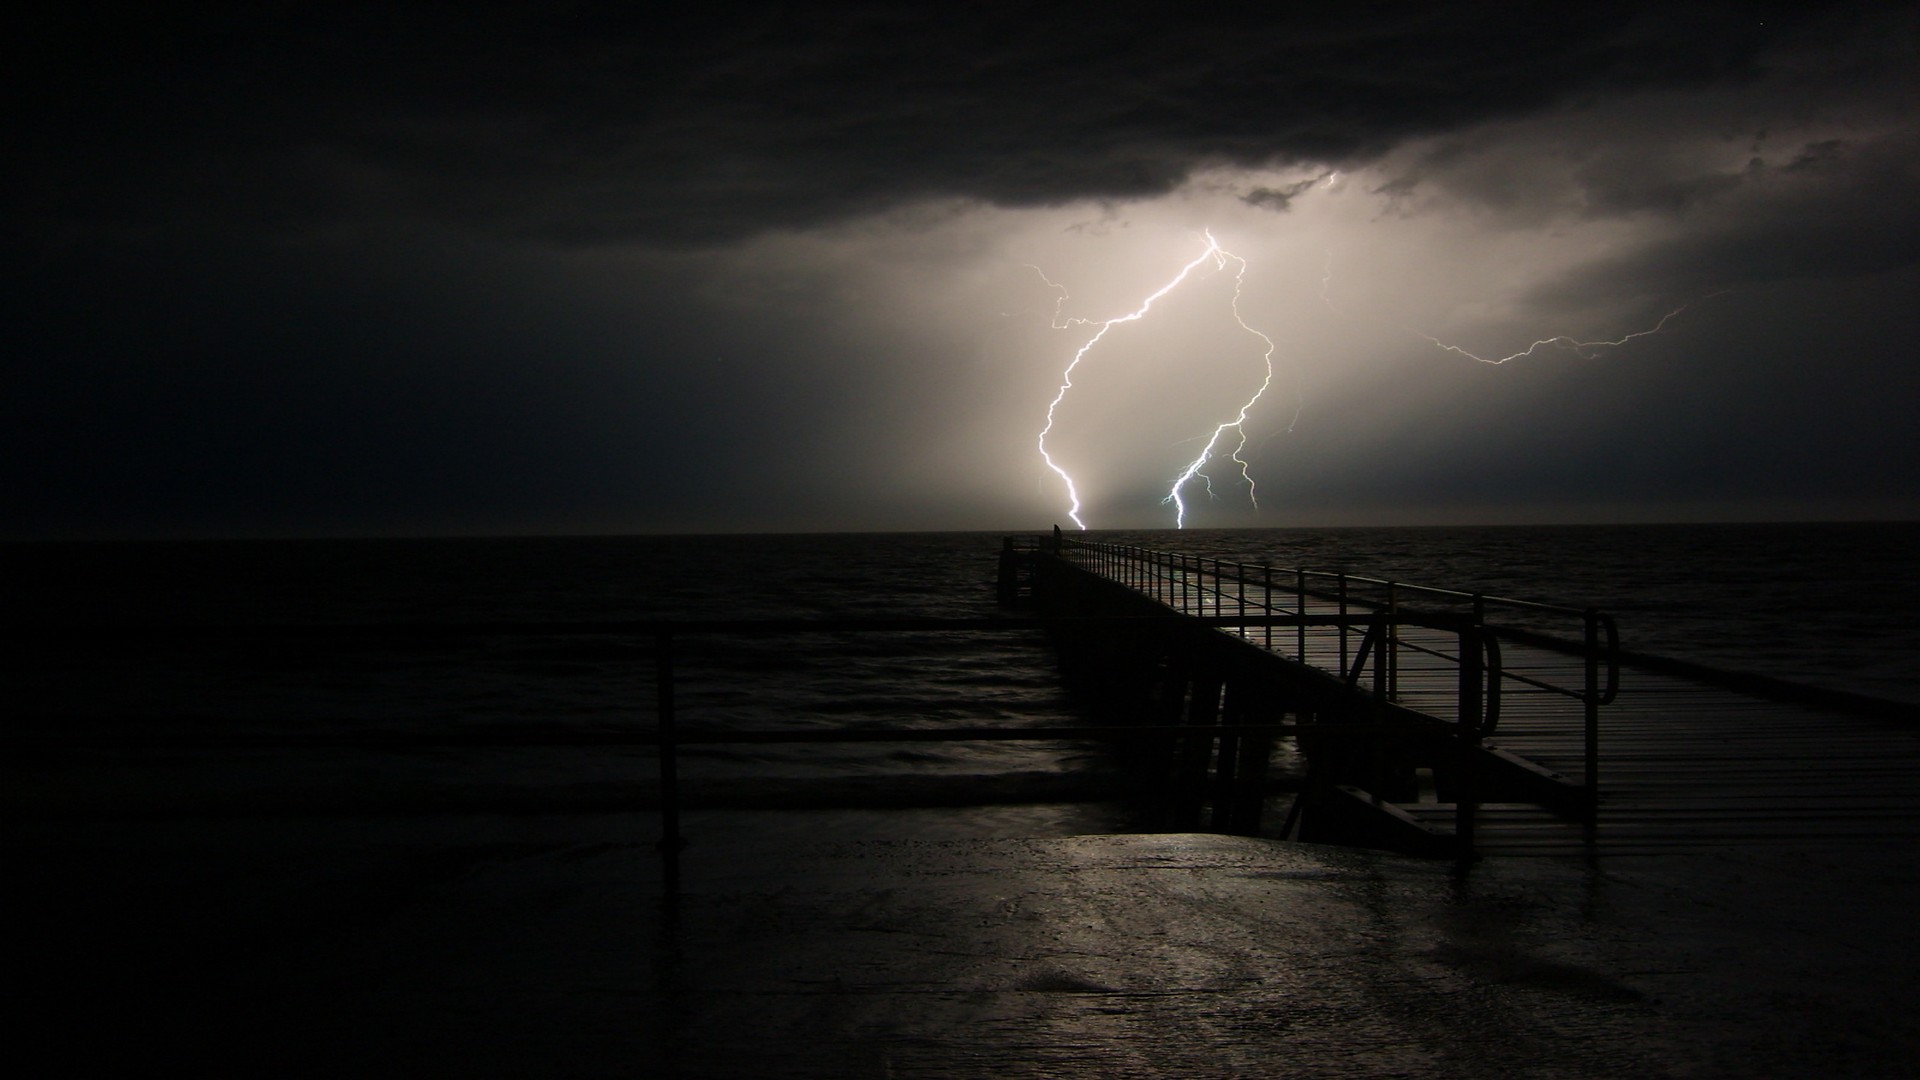 photography, black & white, pier, lightning